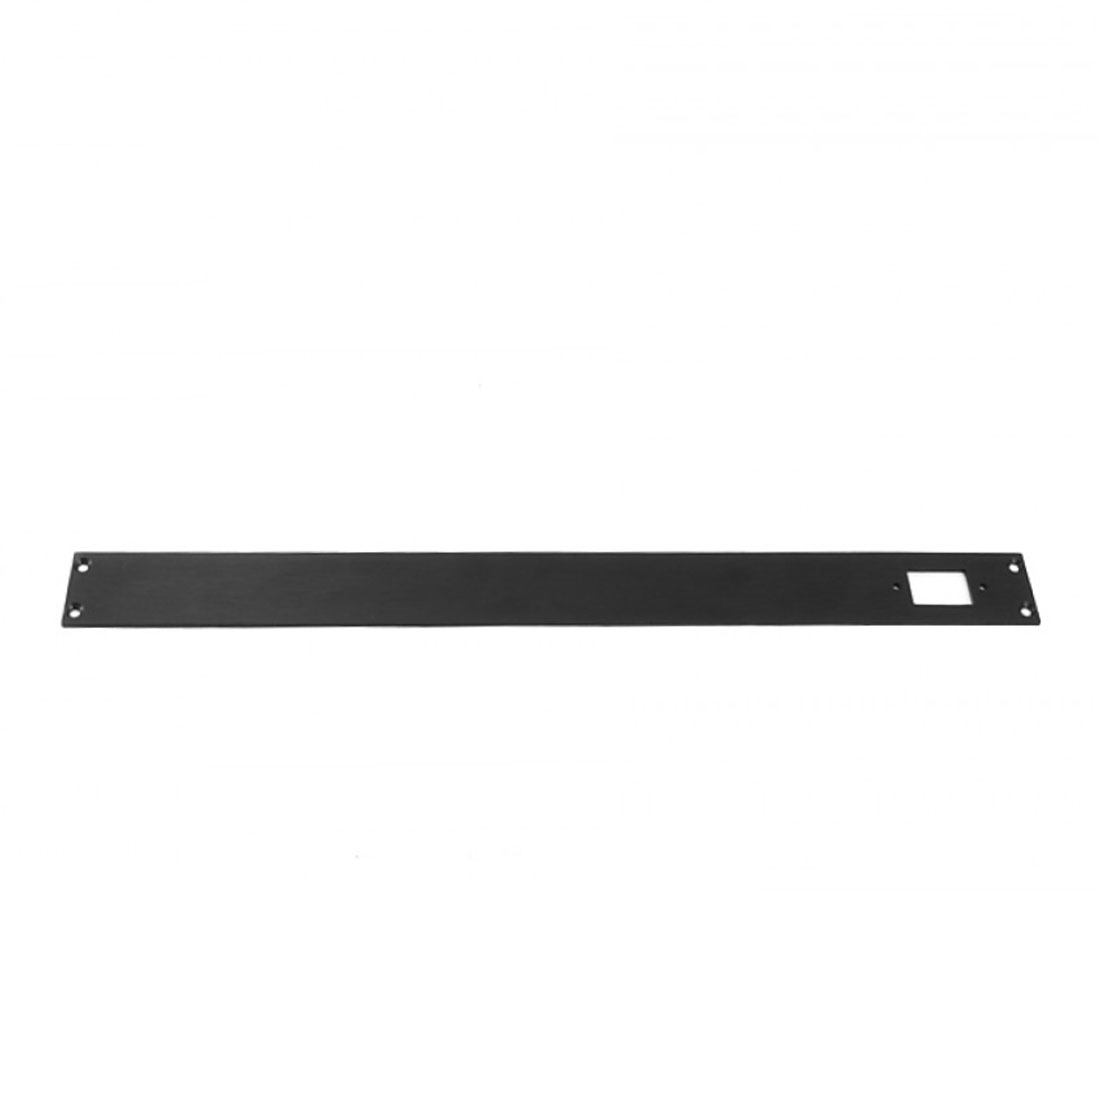 1NSLA01350N - 1U rack krabice s lištou, 350mm, 10mm - panel černý, AL víka